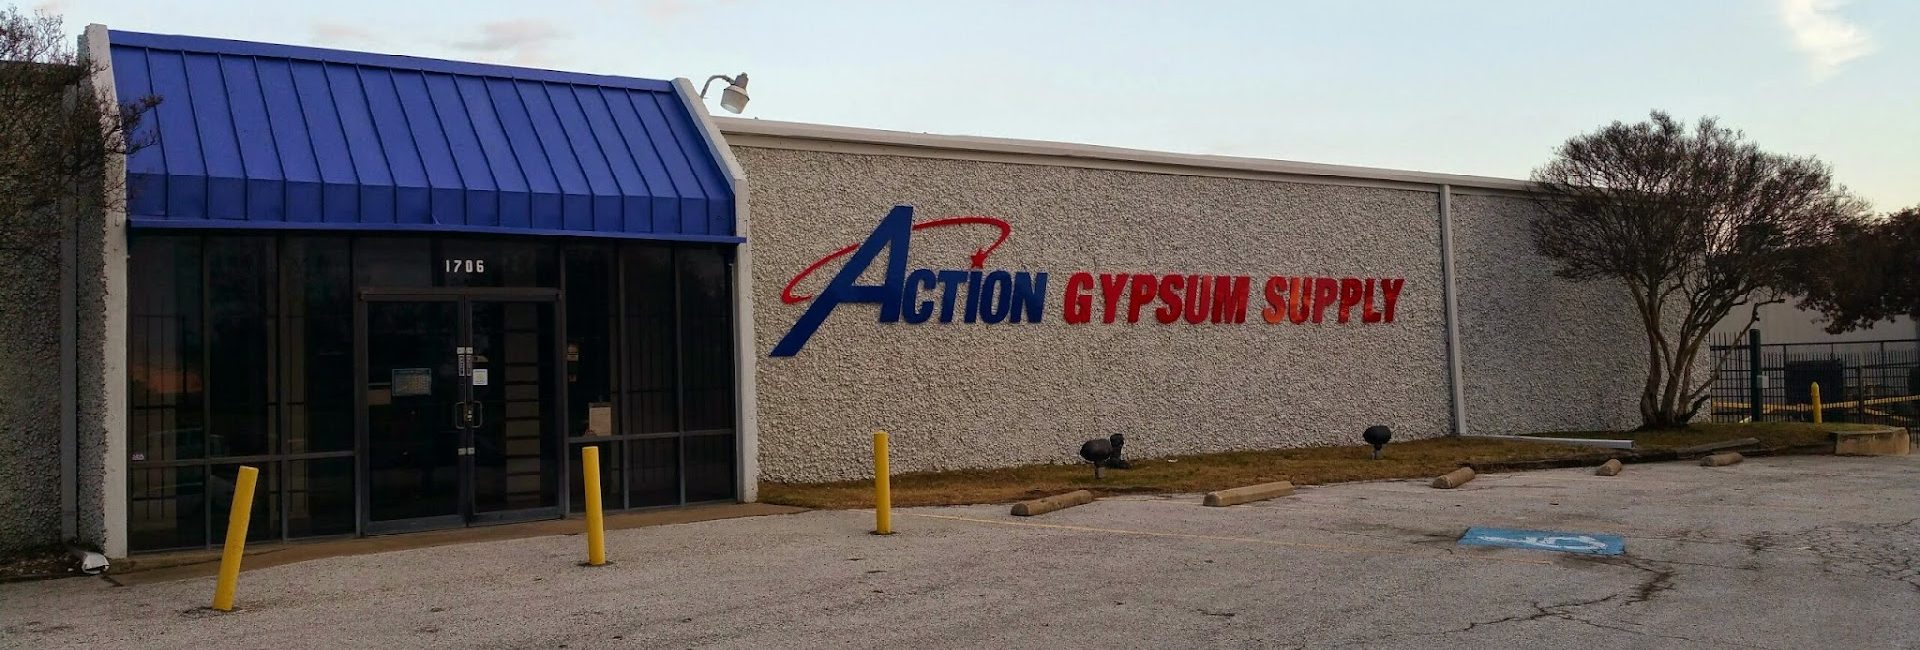 Action Gypsum Supply 1